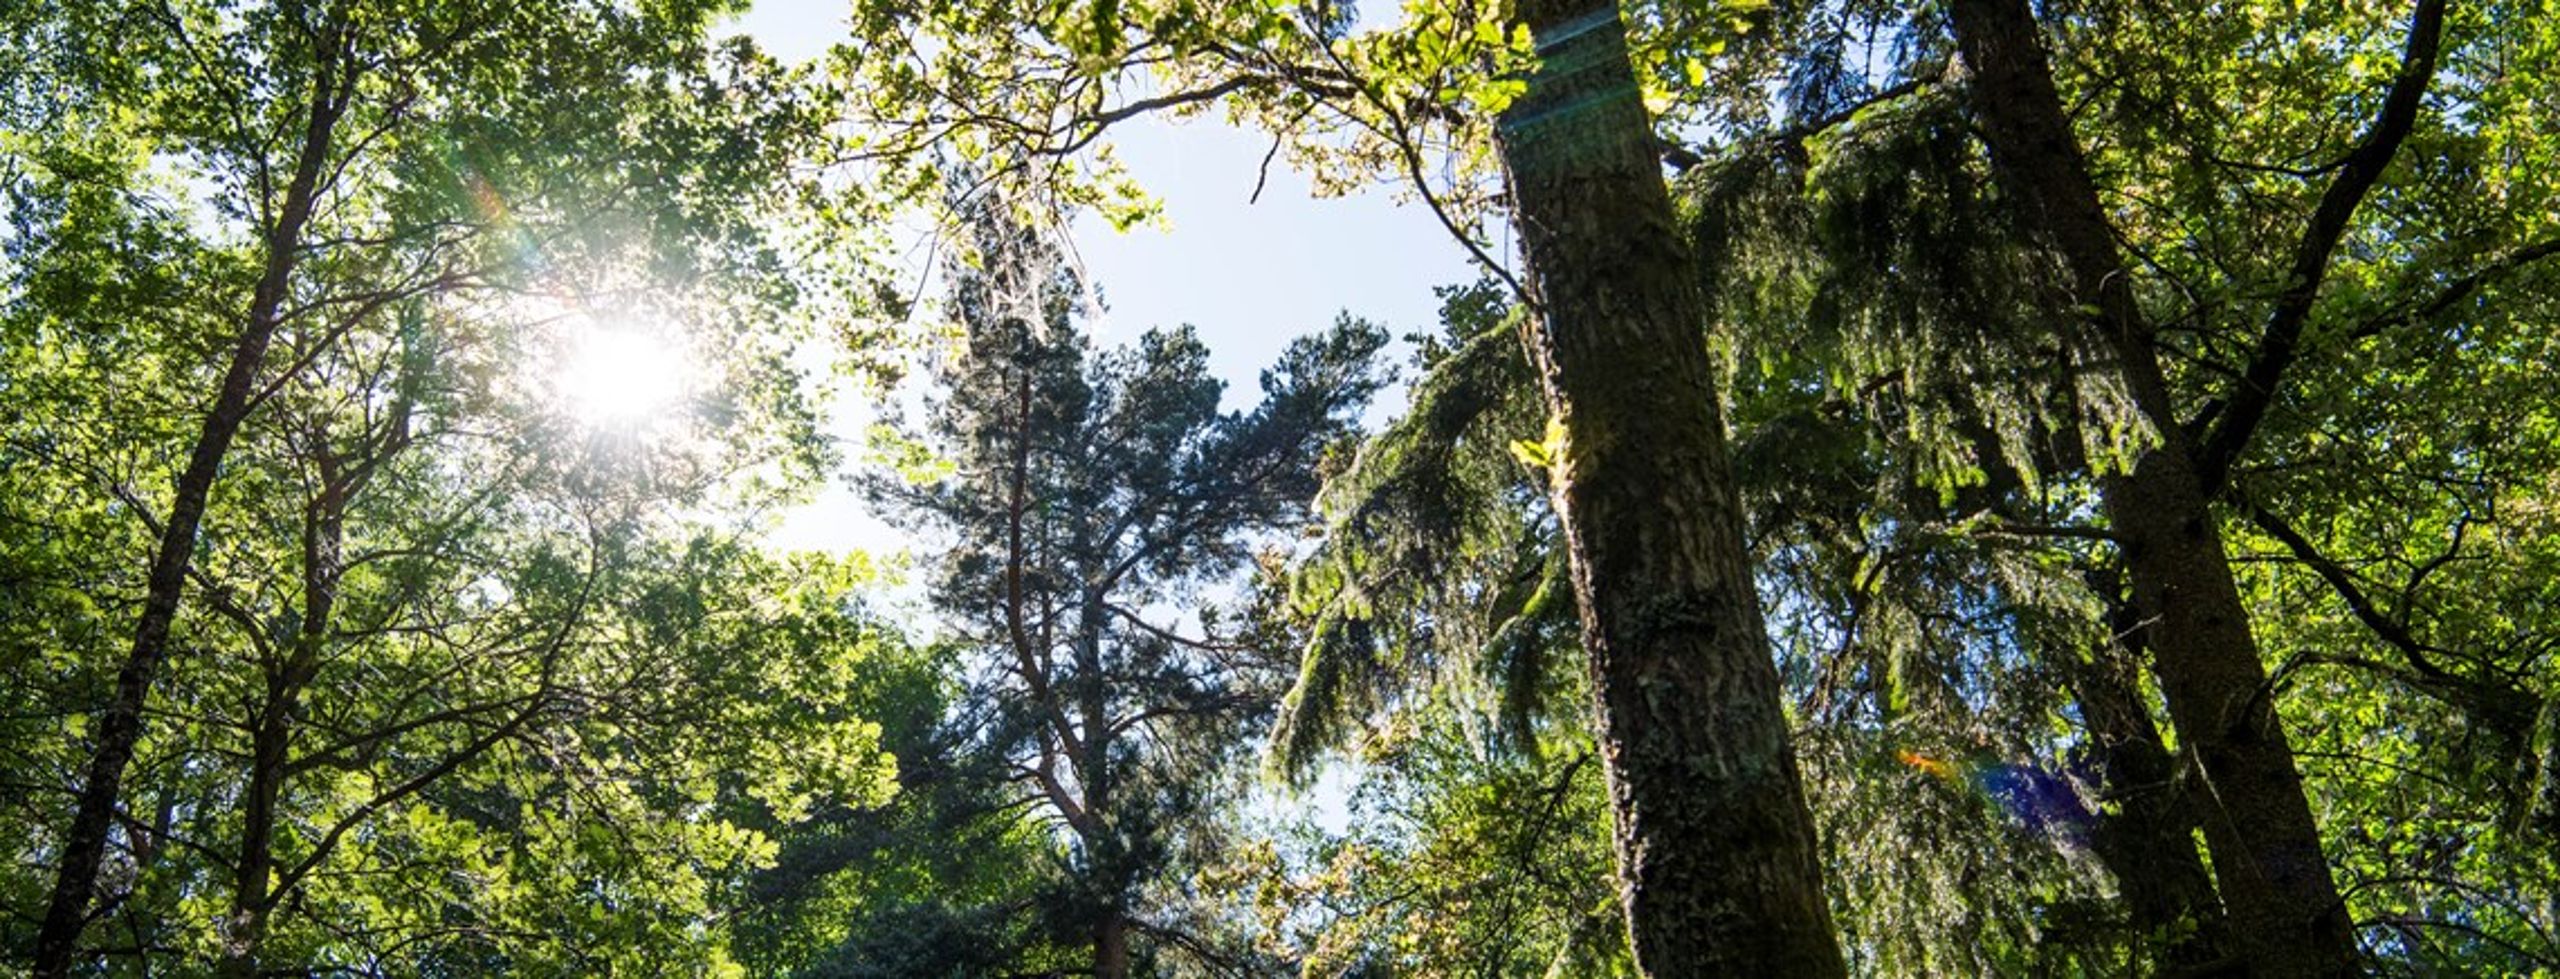 "I betänkandet föreslås en stor statlig satsning för att bevara de unika naturskogarna som har de allra högsta värdena för biologisk mångfald på ekosystemnivå i Sverige."